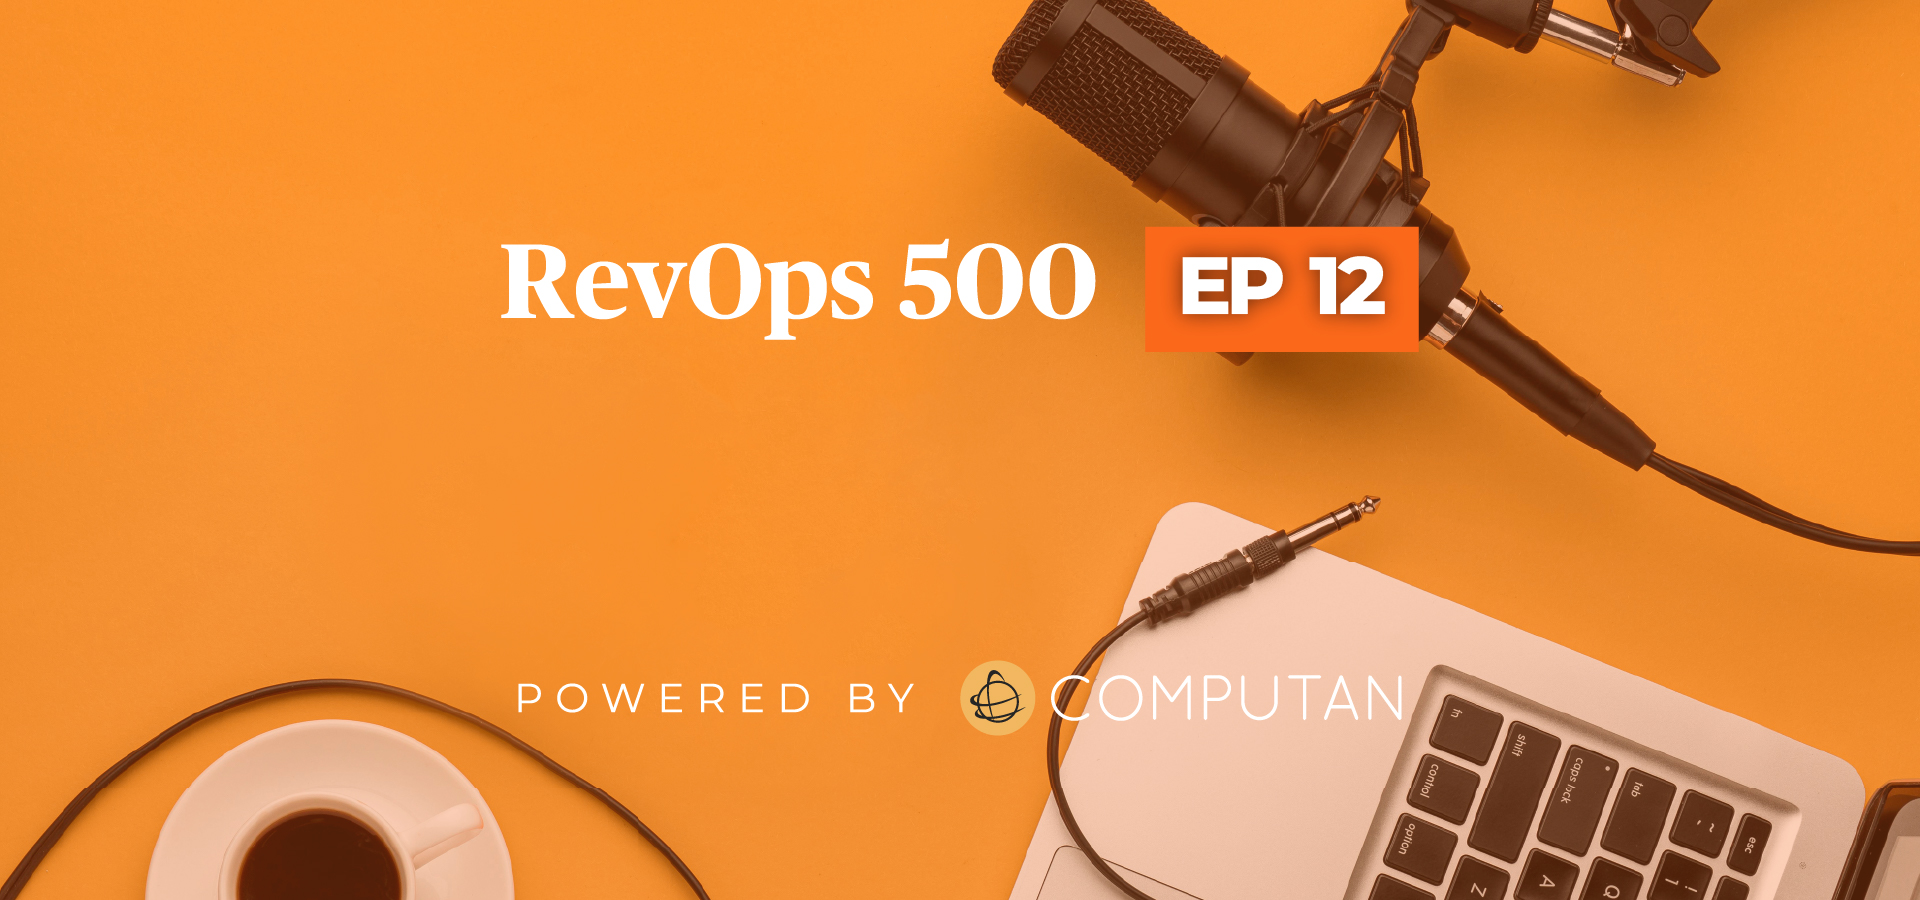 RevOps Episode 12